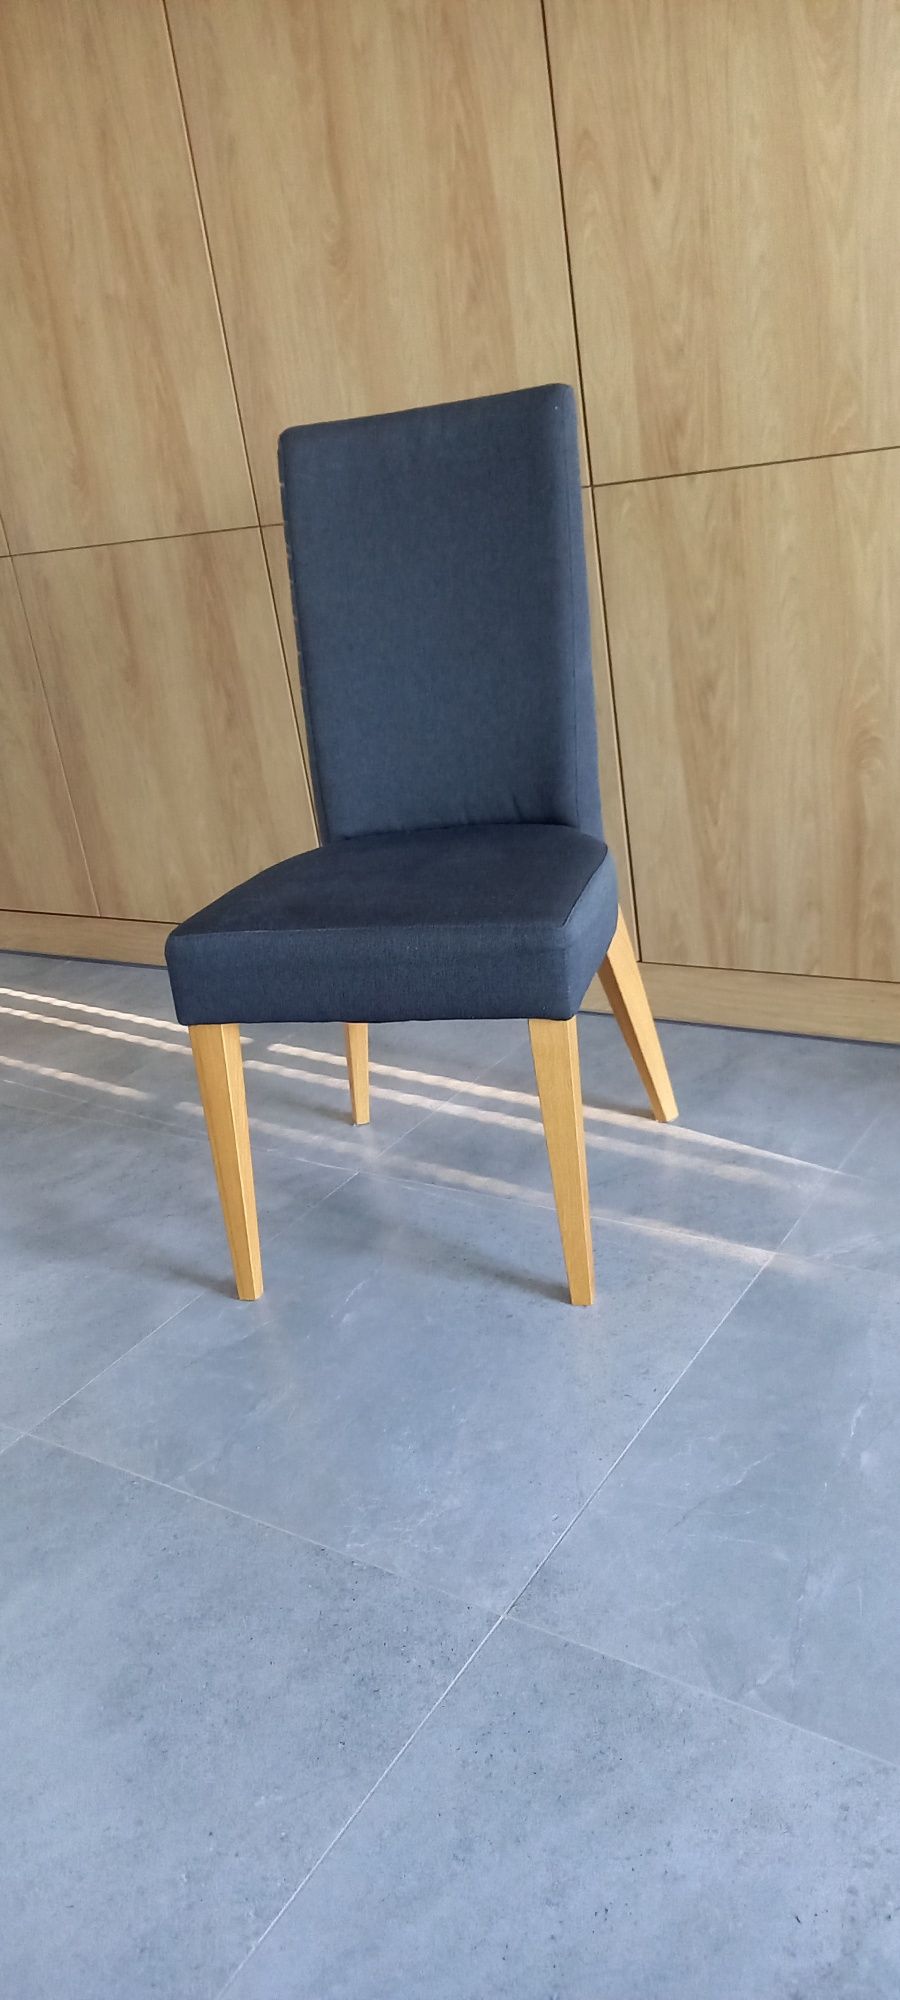 4 Krzesła w komplecie ze stołem lub bez